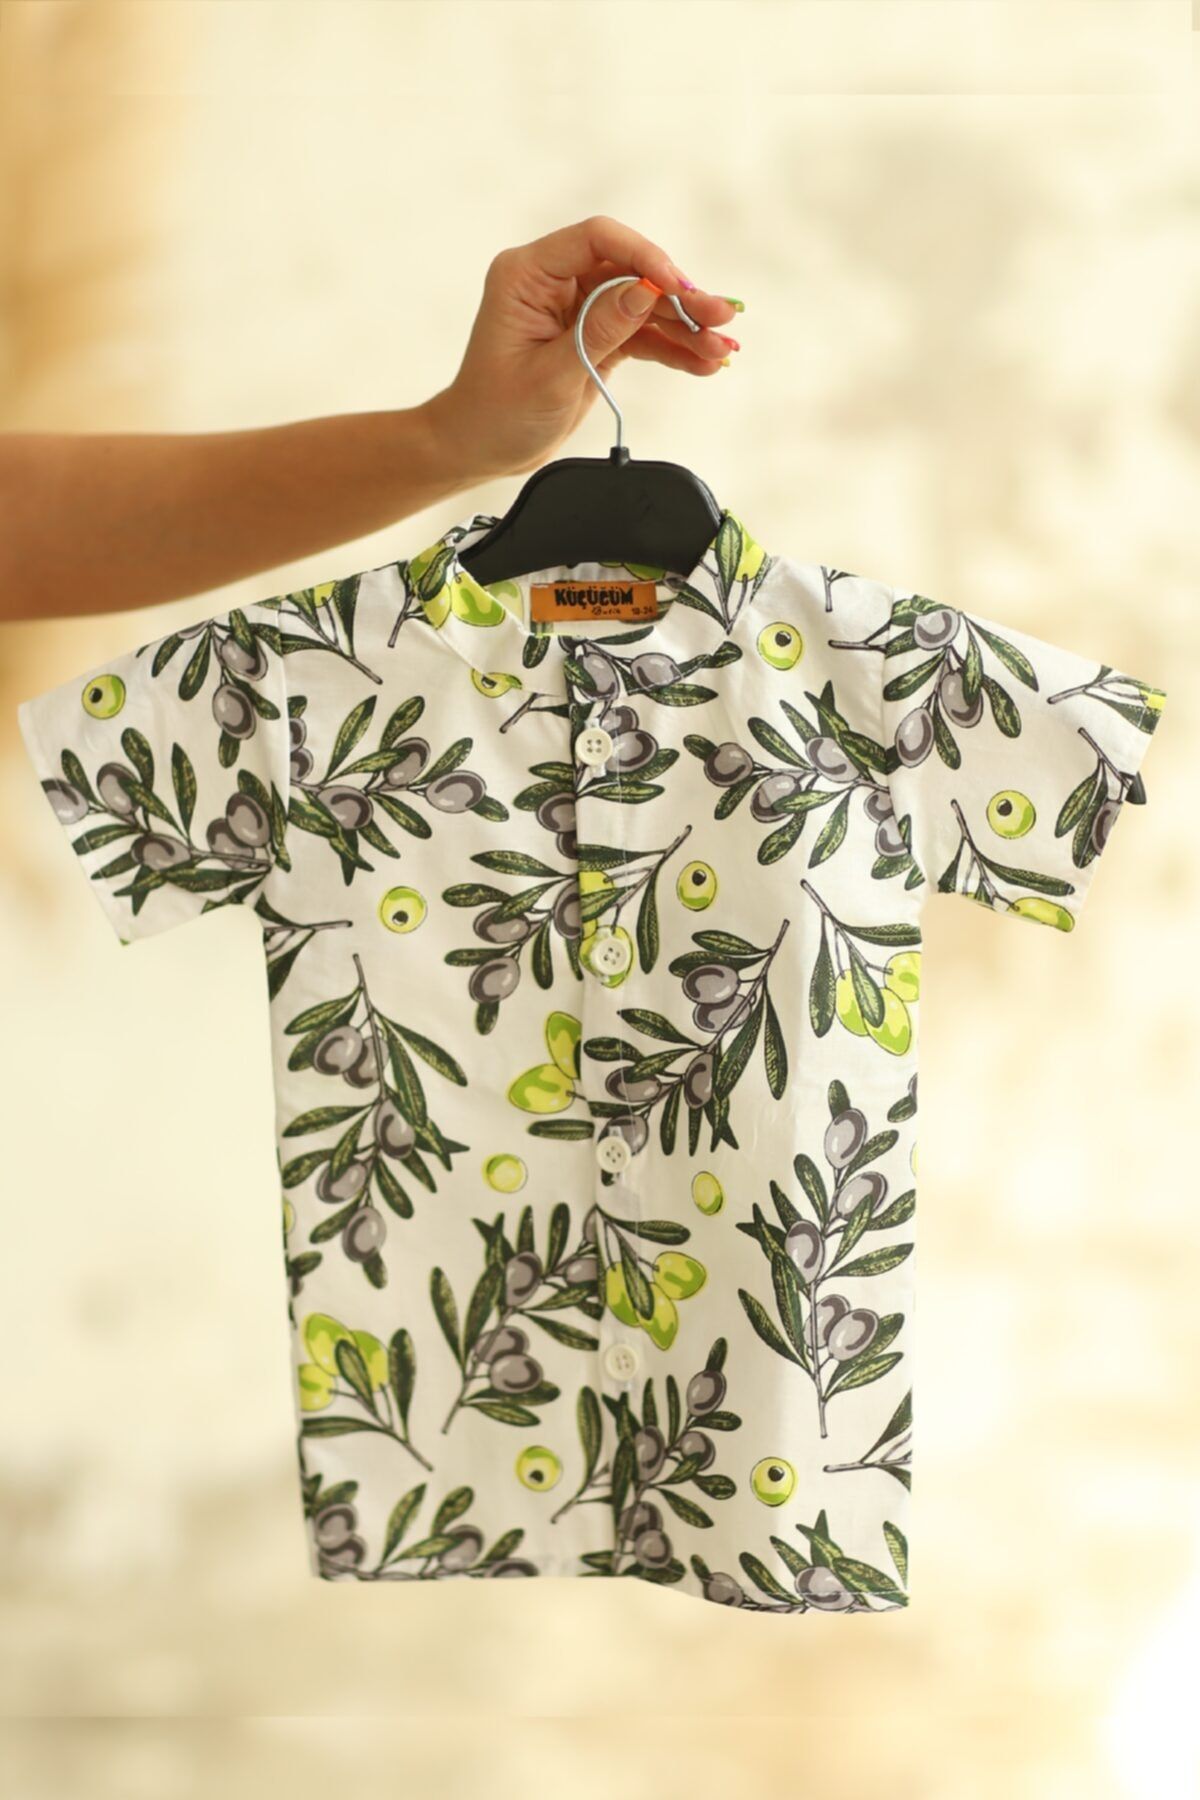 پیراهن پسرانه بچگانه طرح زیتون از سری مادر و کودک